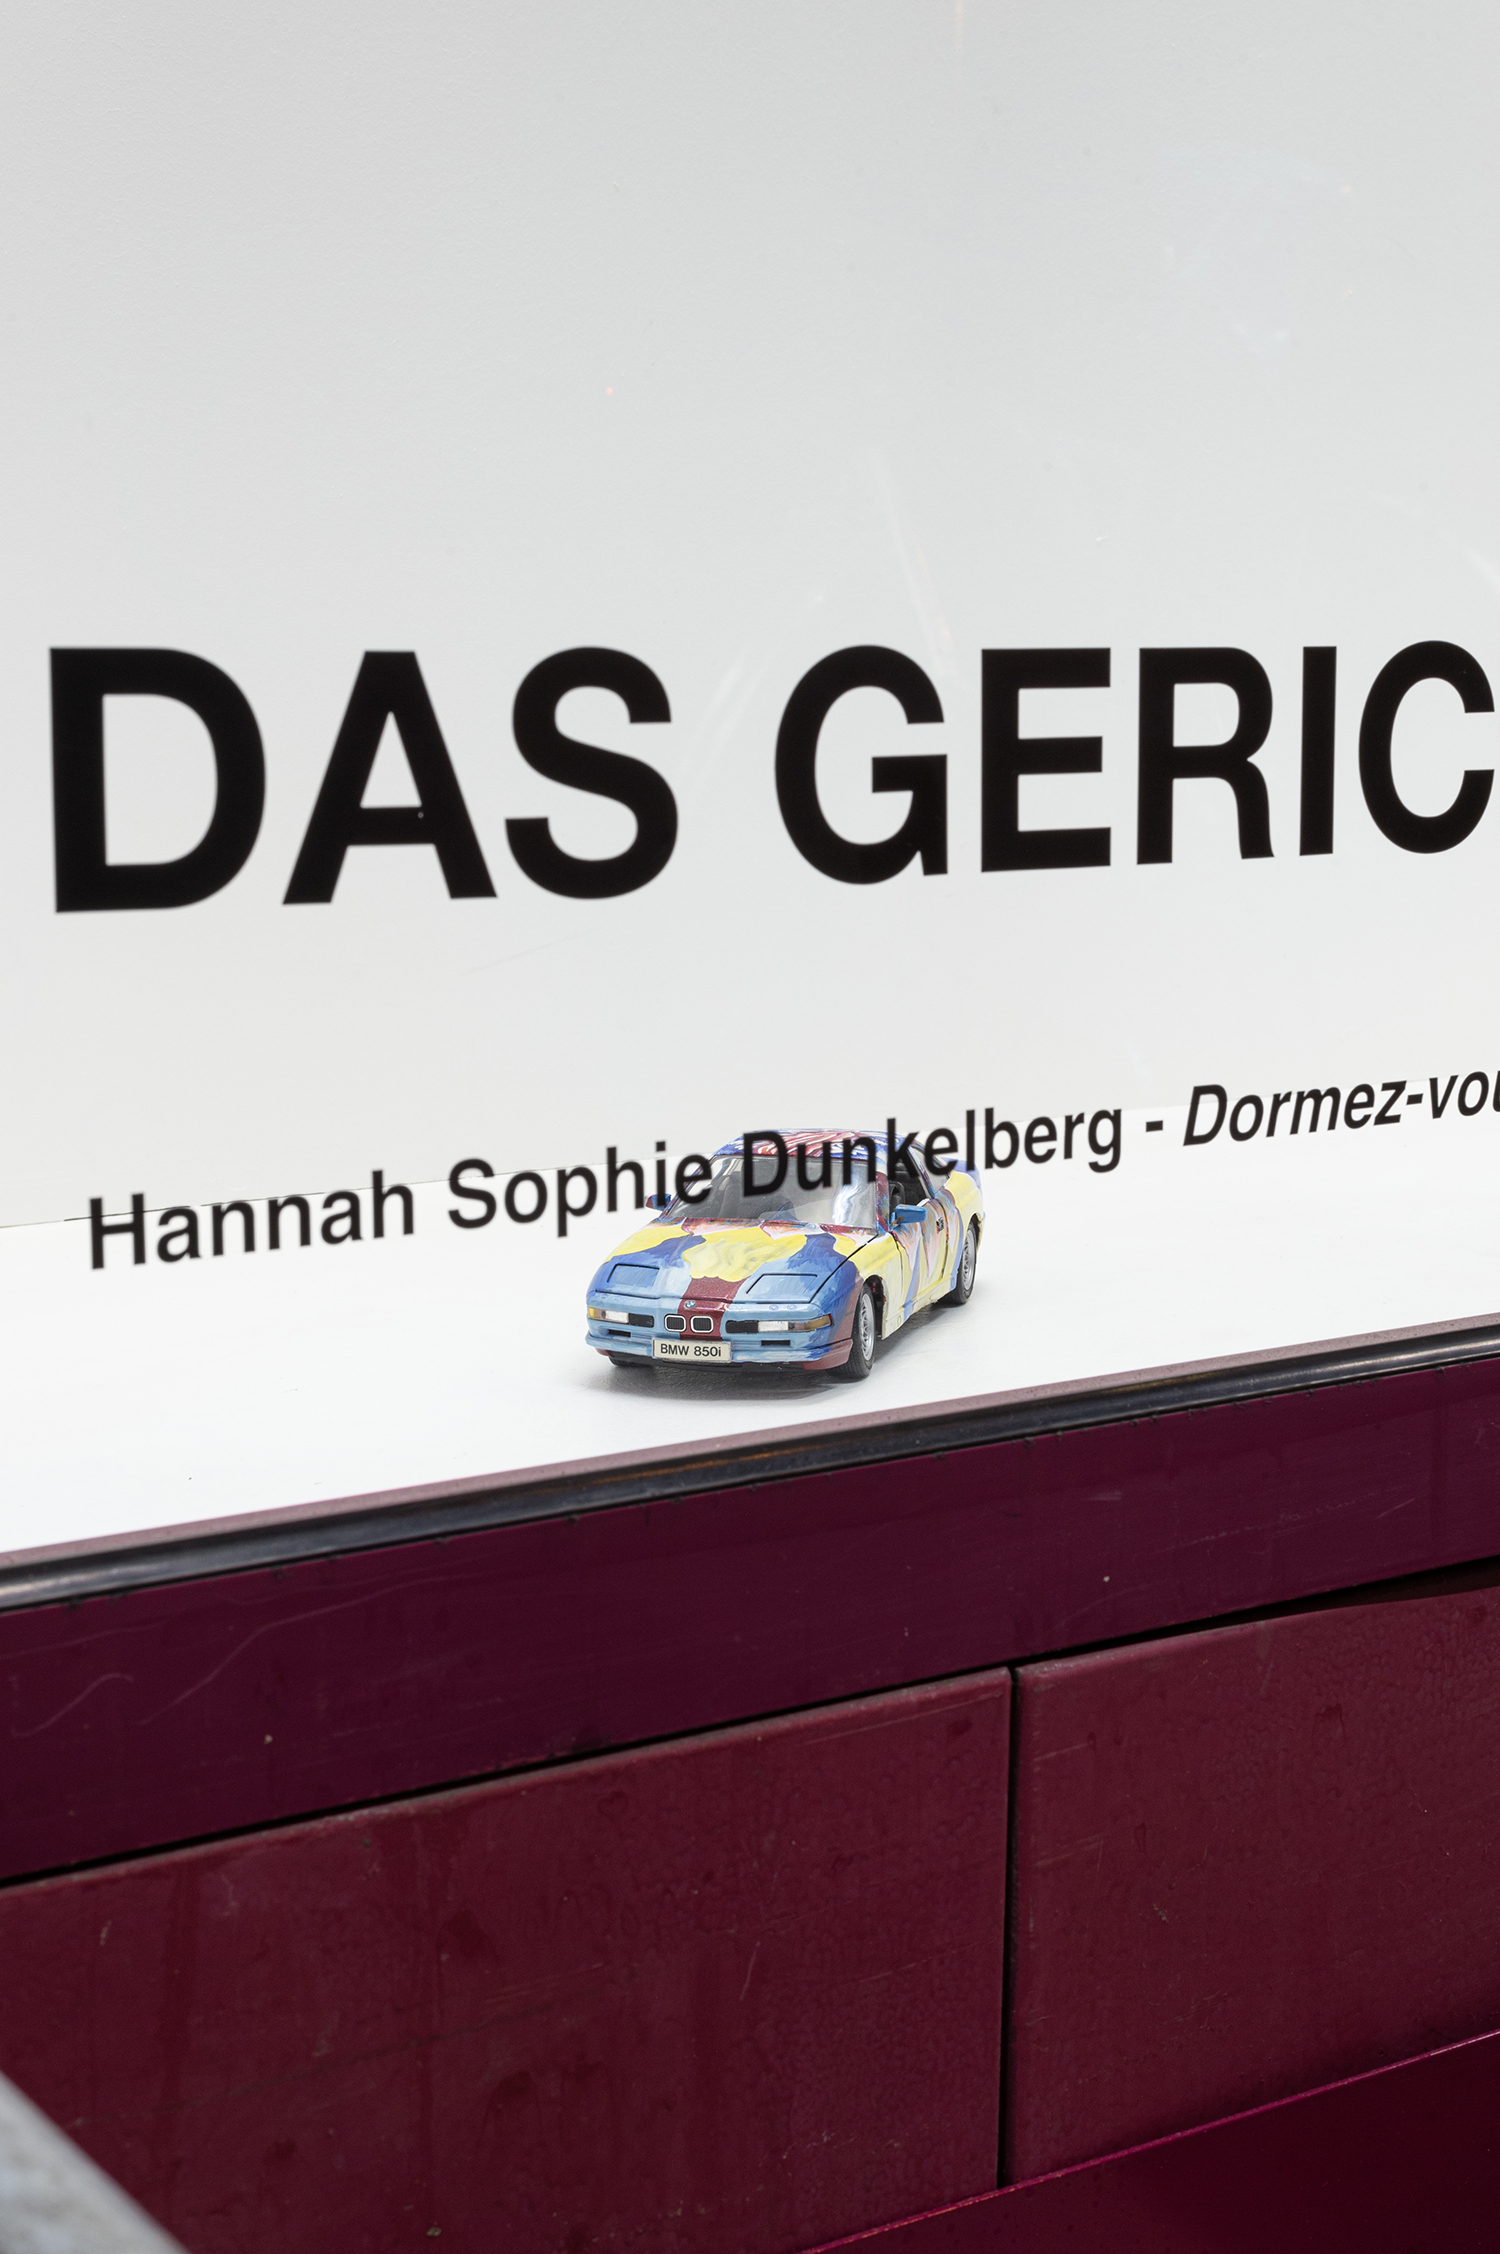 Hannah Sophie Dunkelberg, Dormez-vous, DAS GERICHT, exhibition view